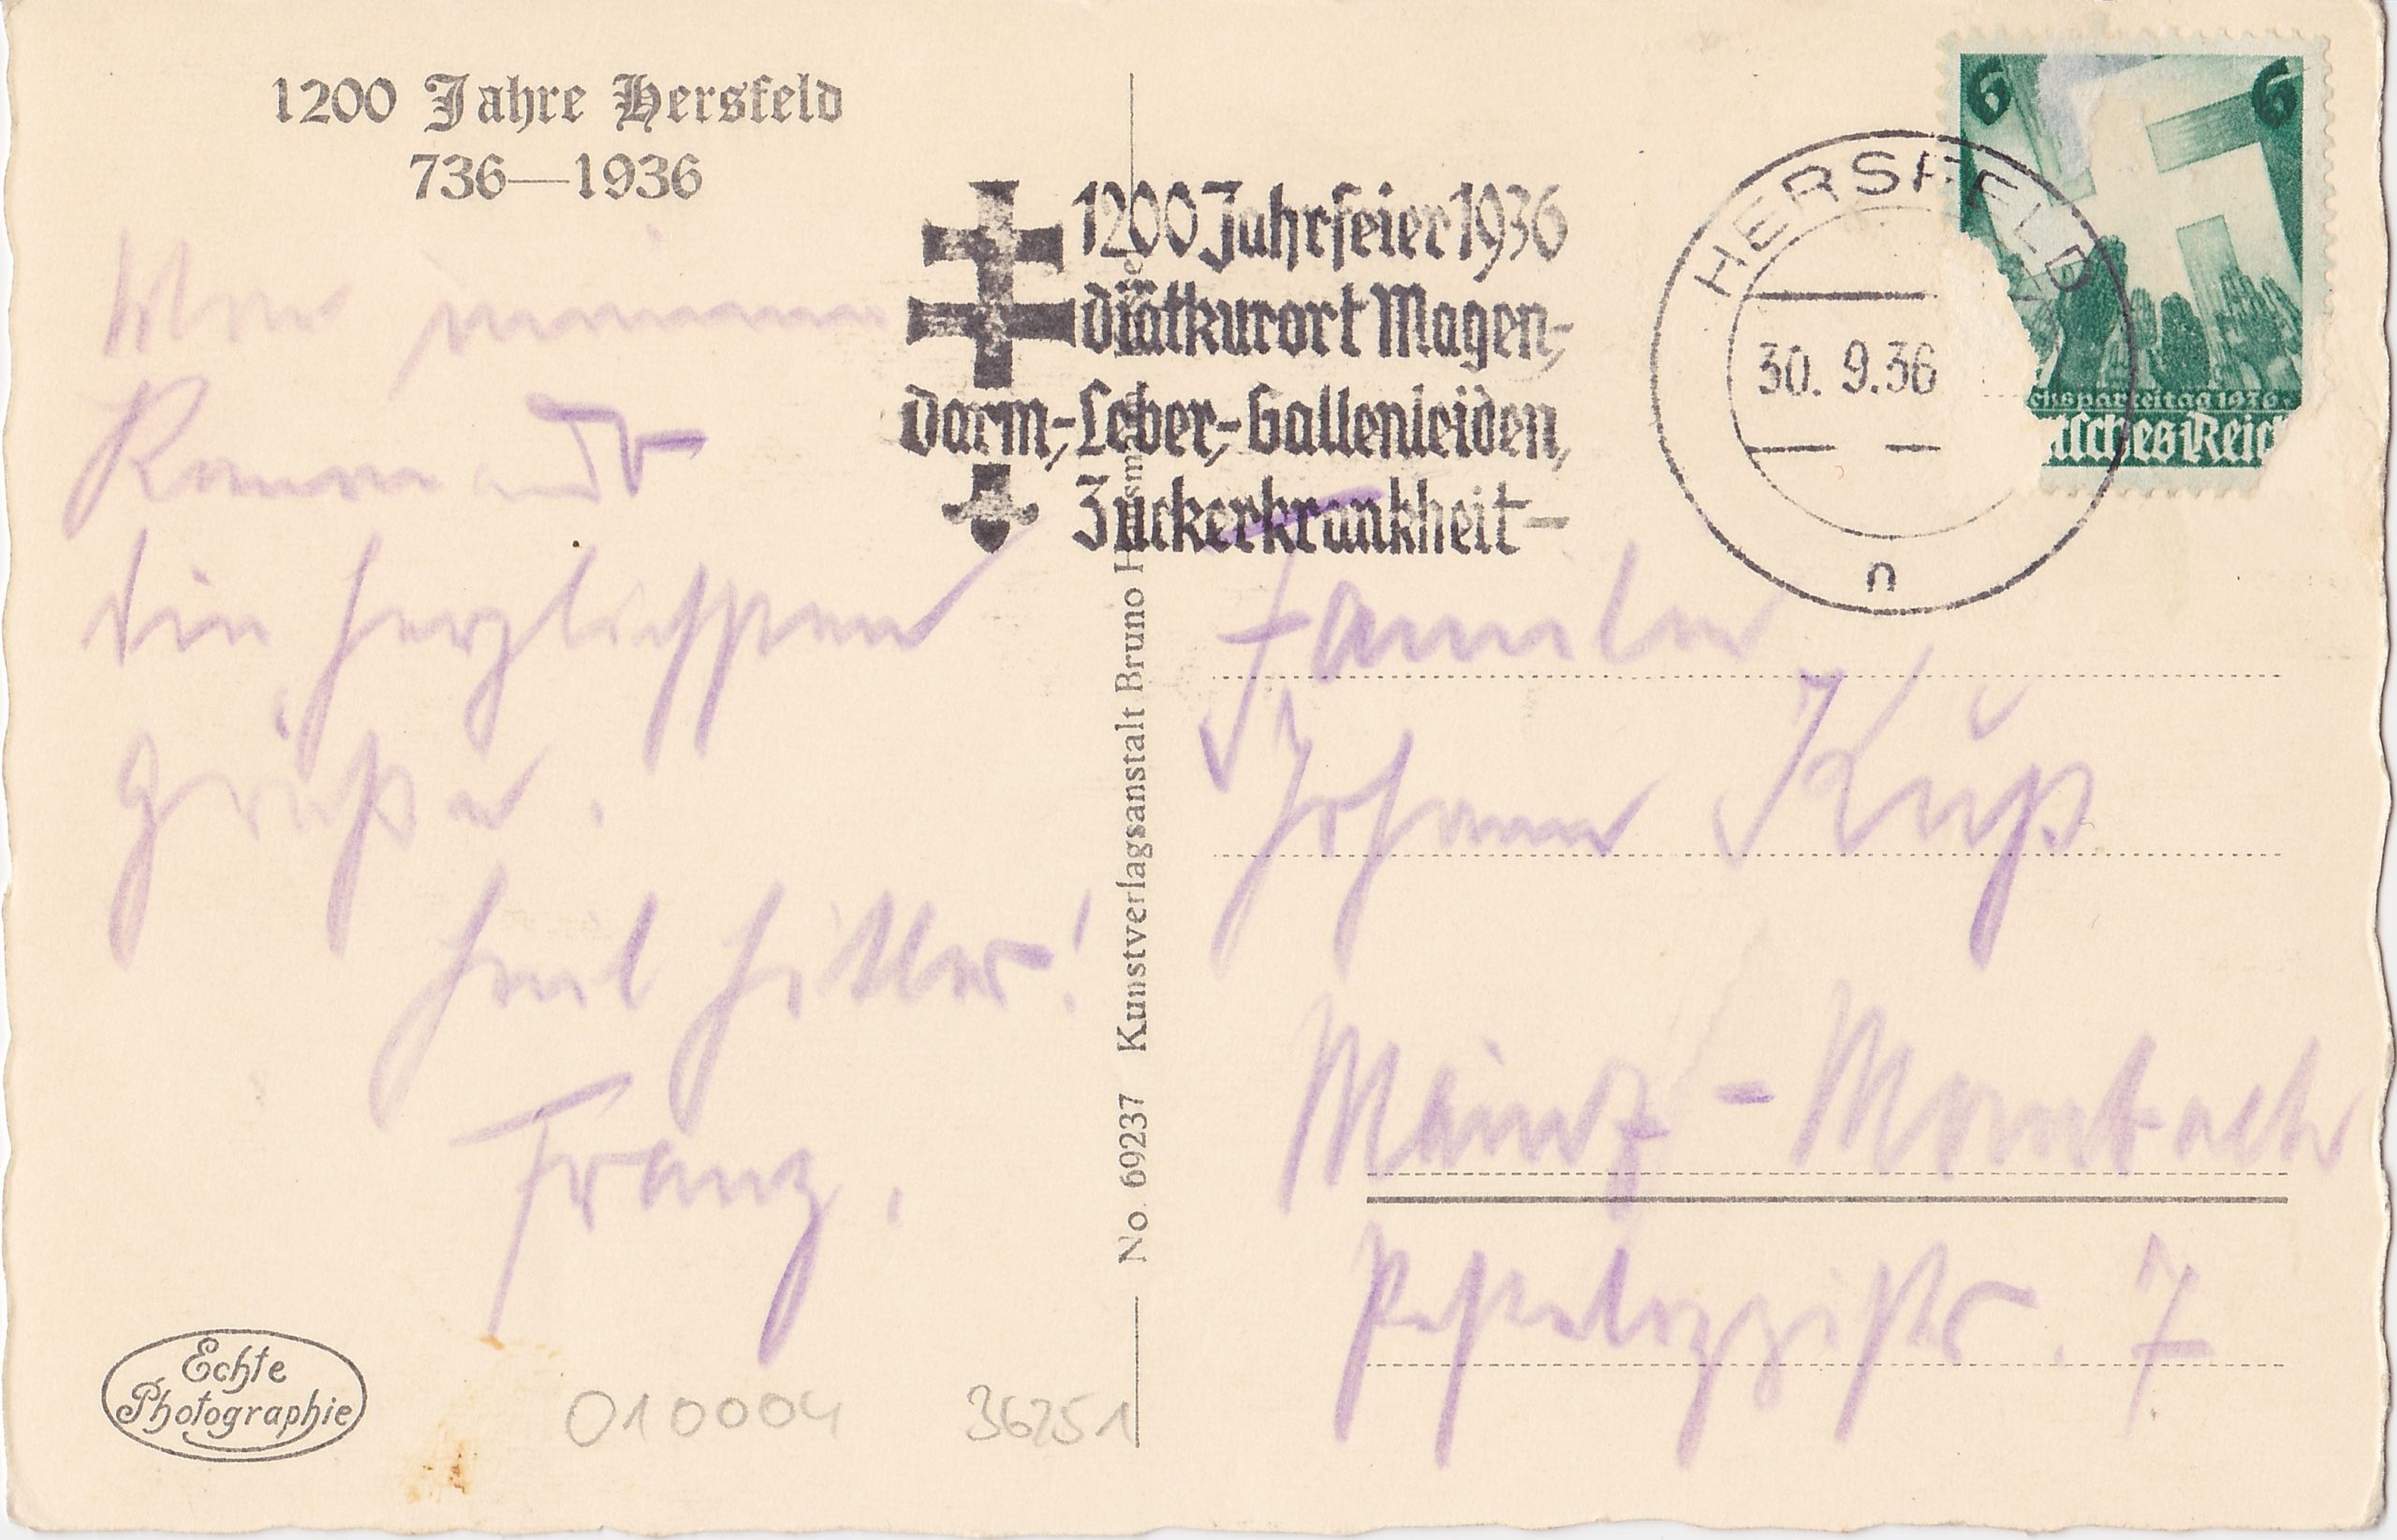 Postkarte, gel. 1936 DR, Stempel "1200 Jahrfeier Diätkurort Hersfeld" u.a. mit Zuckerkrankheit